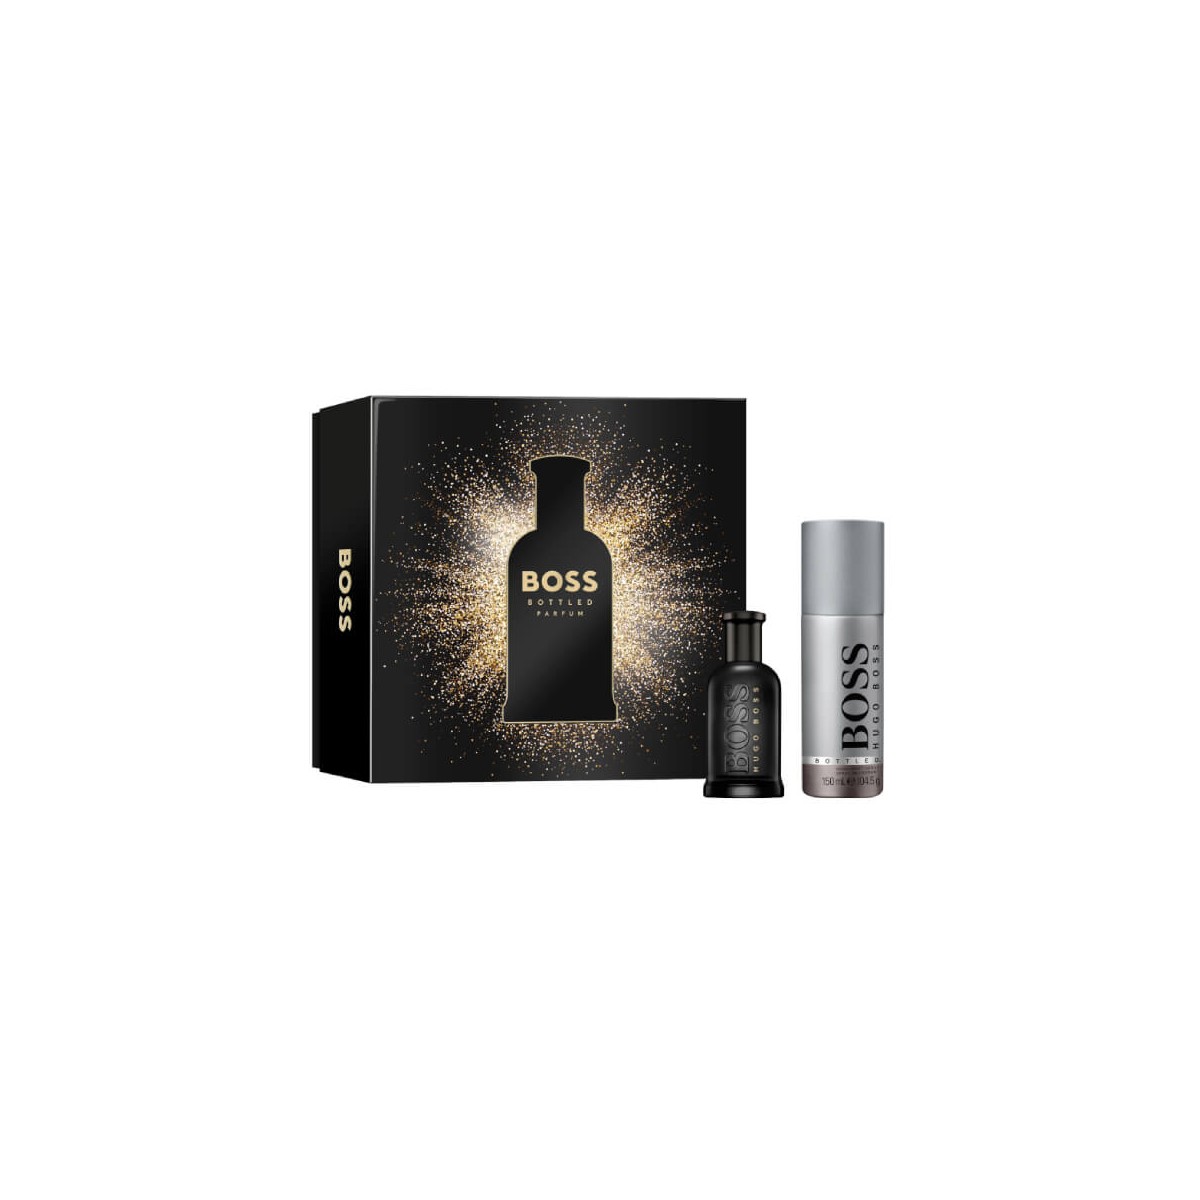 contiene: - BOSS Bottled Parfum 50ml - BOSS Bottled Spray Deodorant for Men 150ml